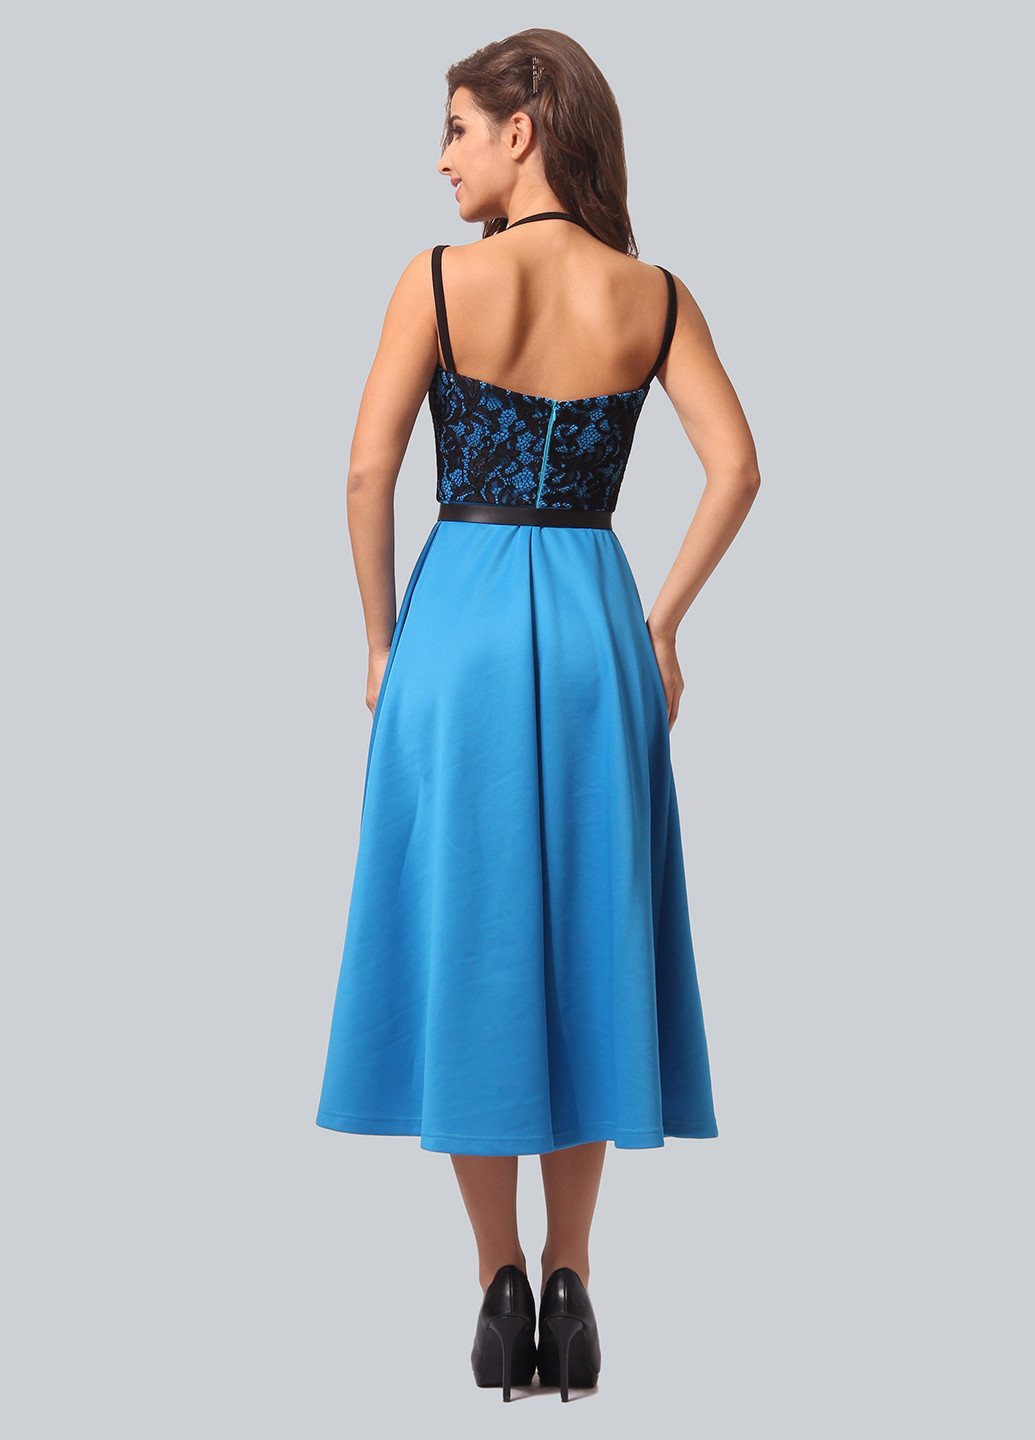 Голубое коктейльное платье клеш Agata Webers однотонное